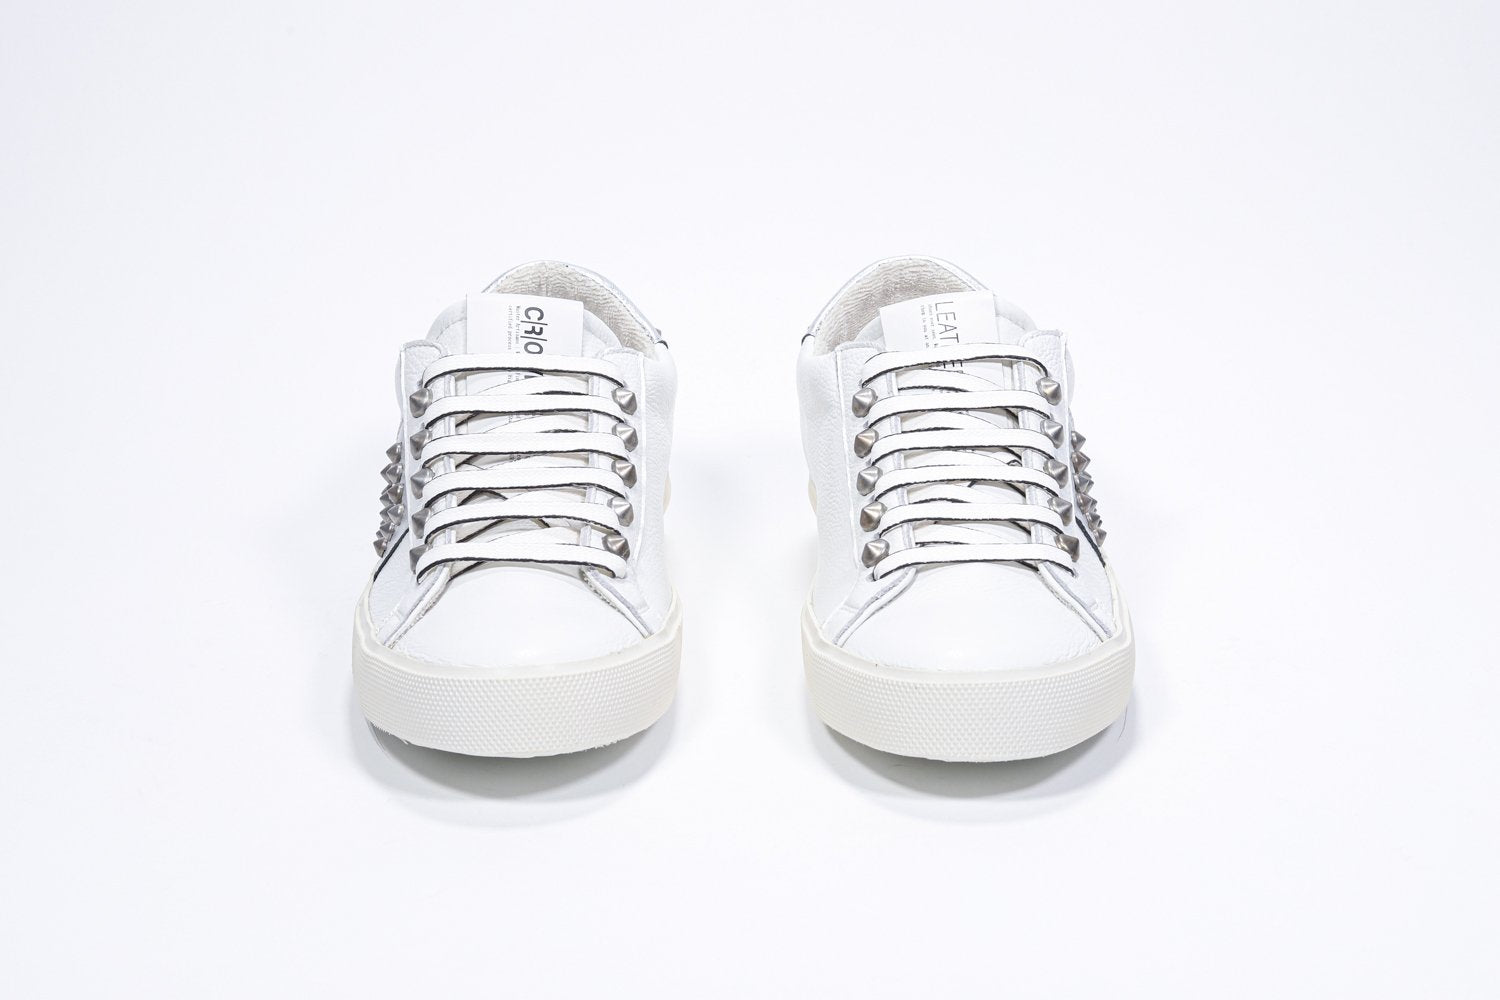 Vista frontale di BASSE bianco e argento metallizzato sneaker. Tomaia in pelle con borchie e suola in gomma vintage.